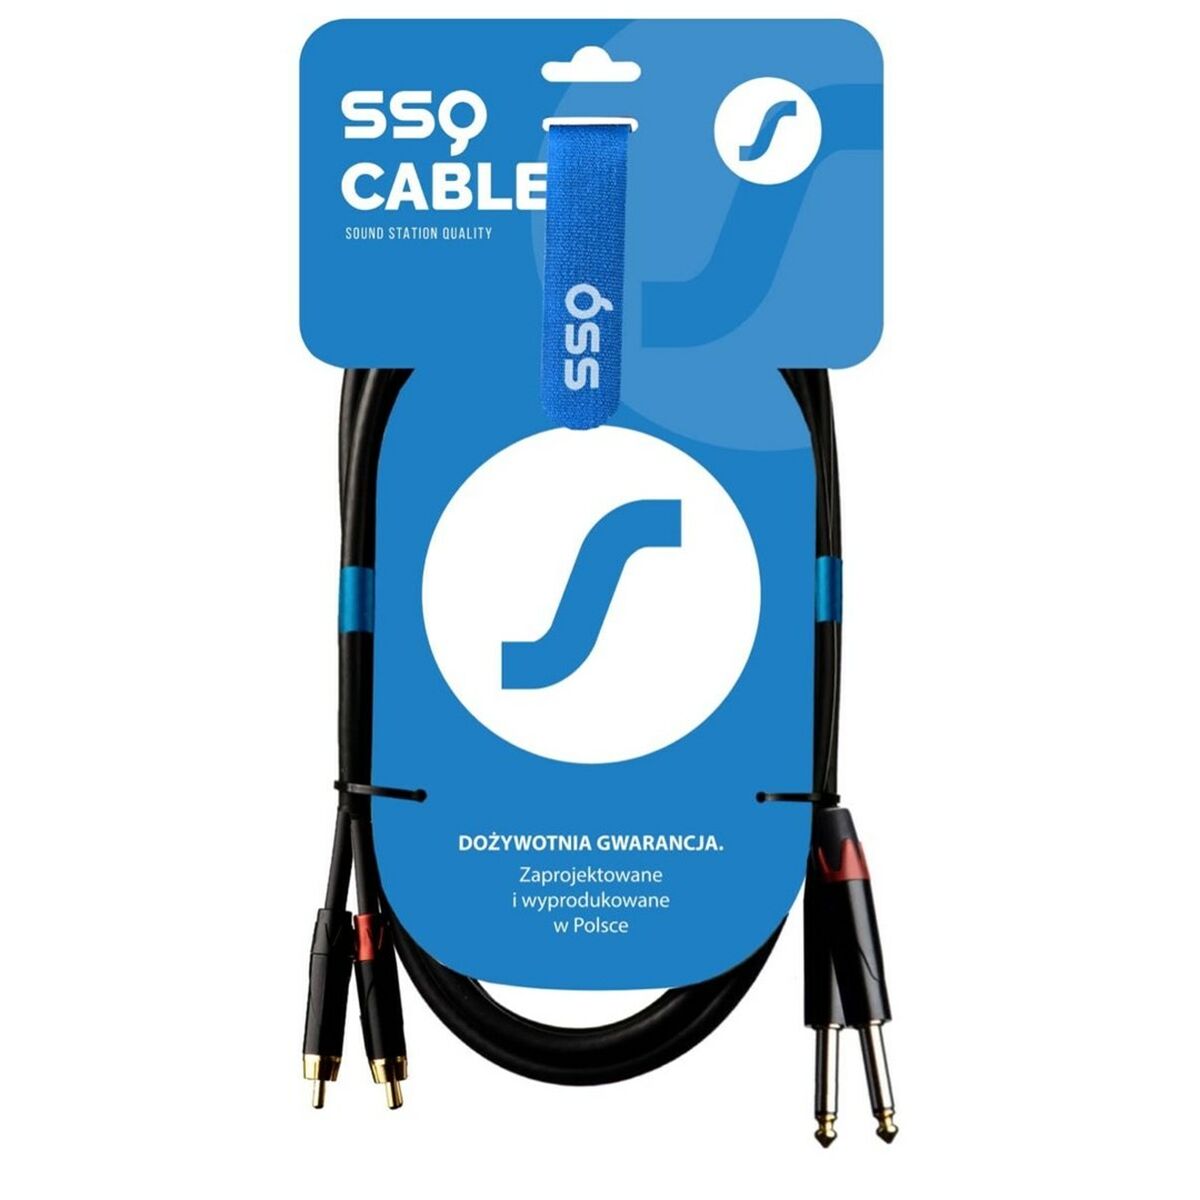 Câble 2 x RCA Sound station quality (SSQ) SS-1427 1 m